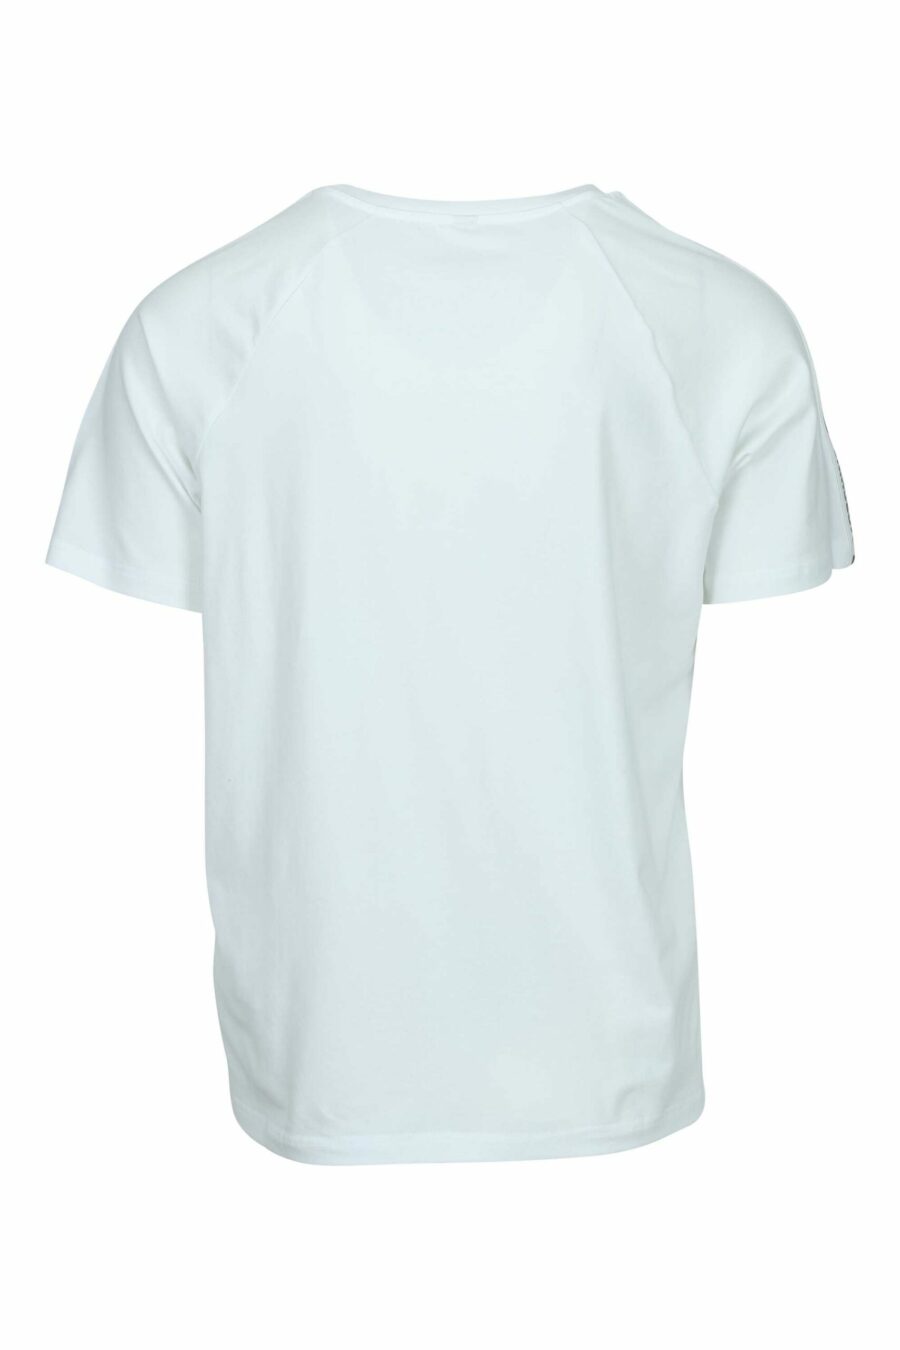 T-shirt branca com o logótipo do urso "underbear" na faixa do ombro - 667113602462 1 scaled